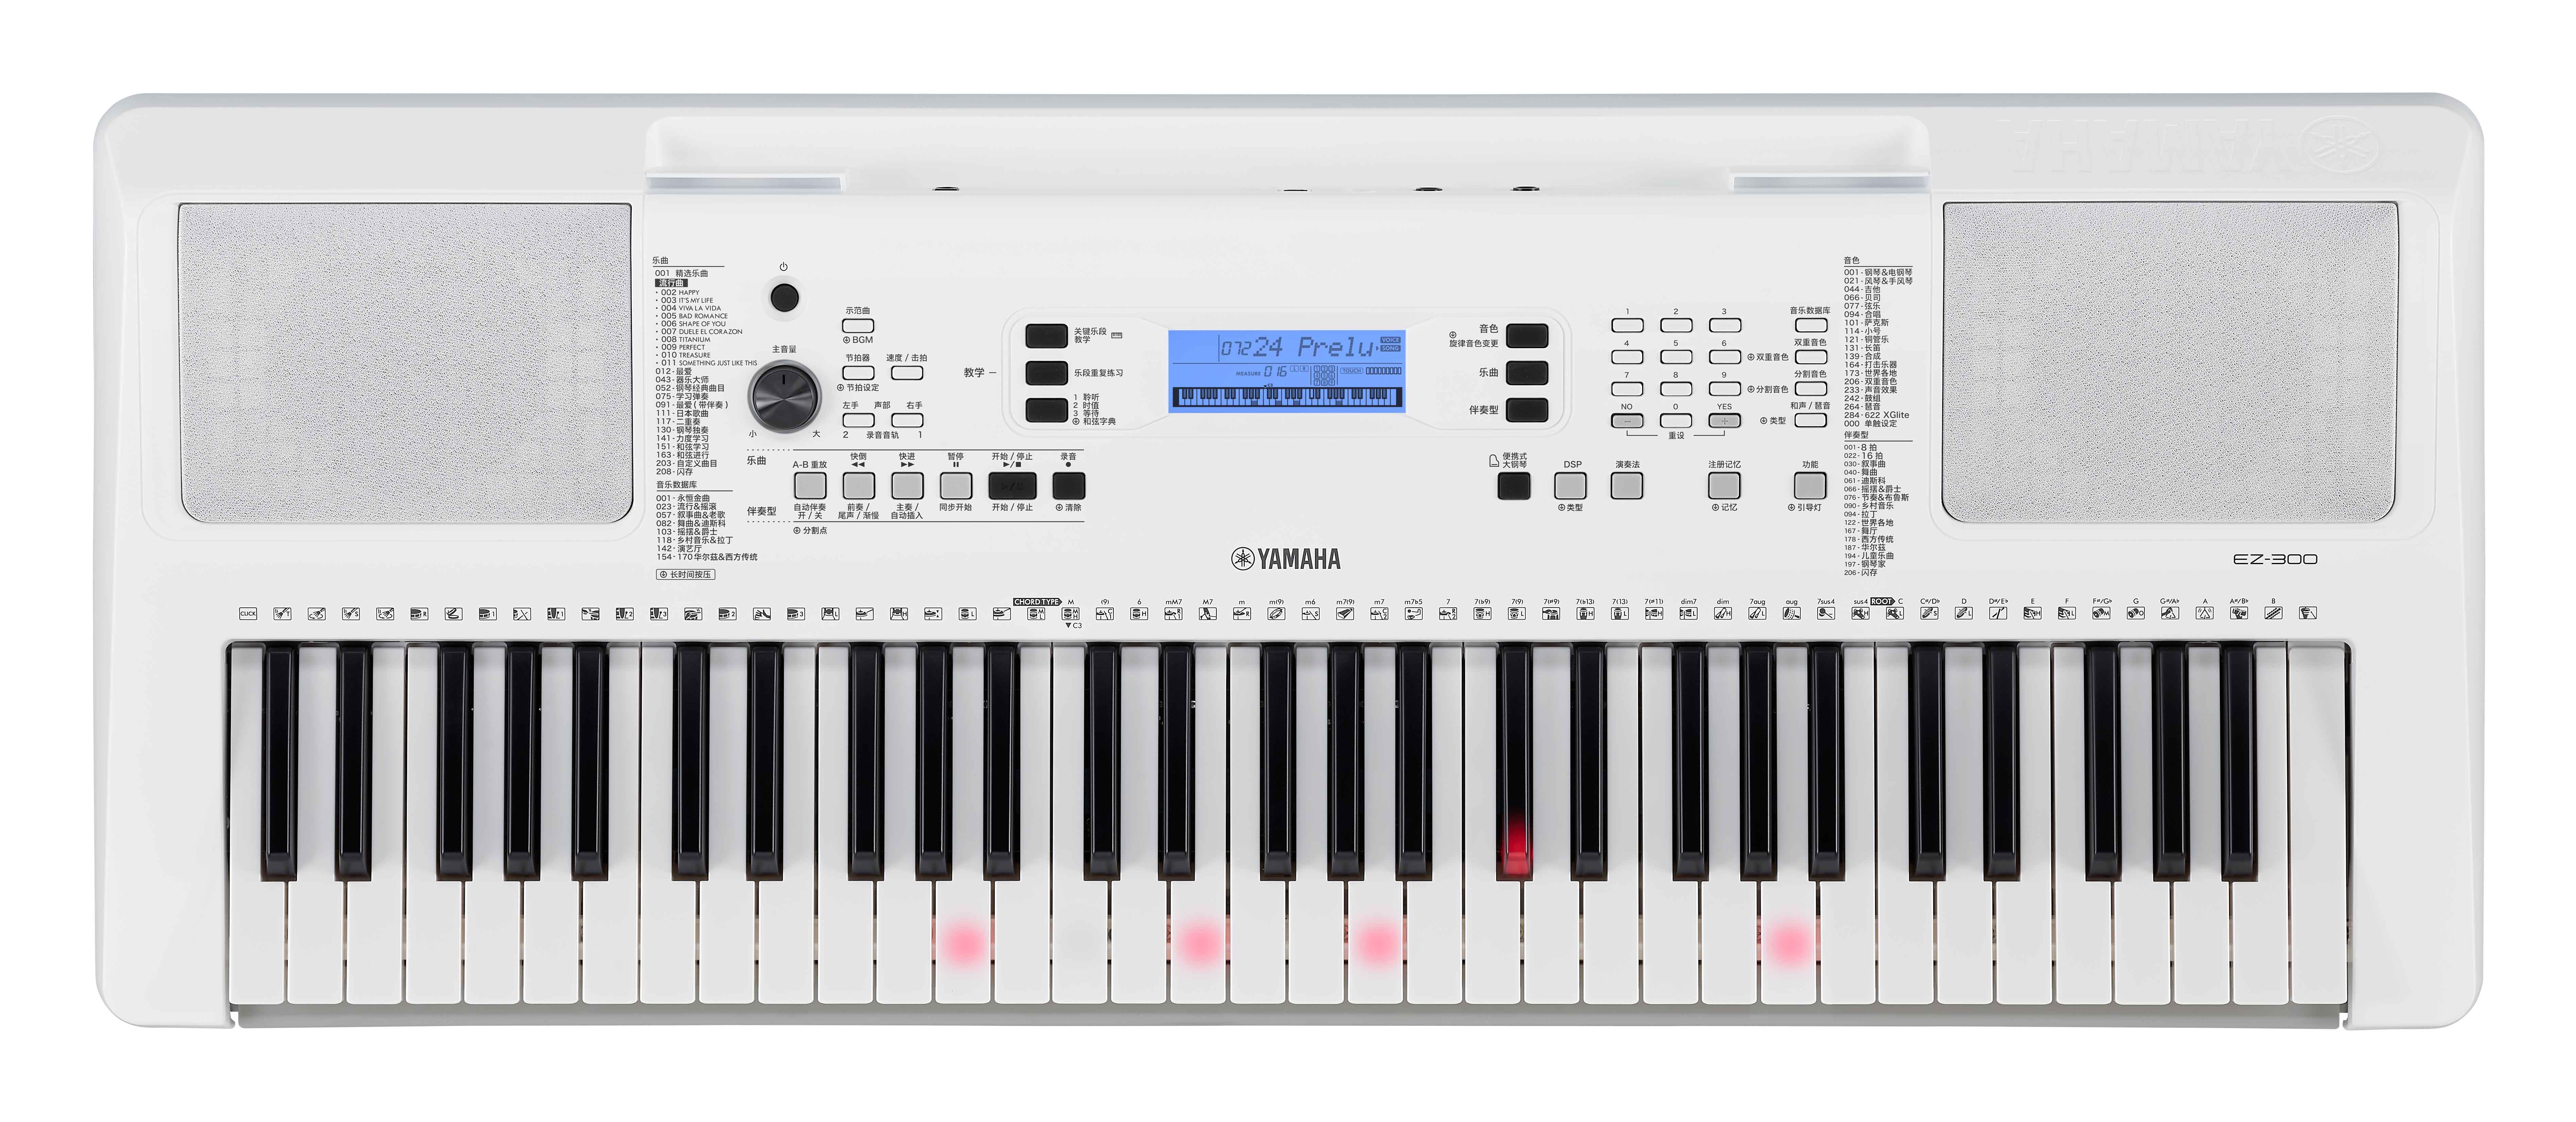 Yamaha Ez 300 - Entertainer Keyboard - Variation 1